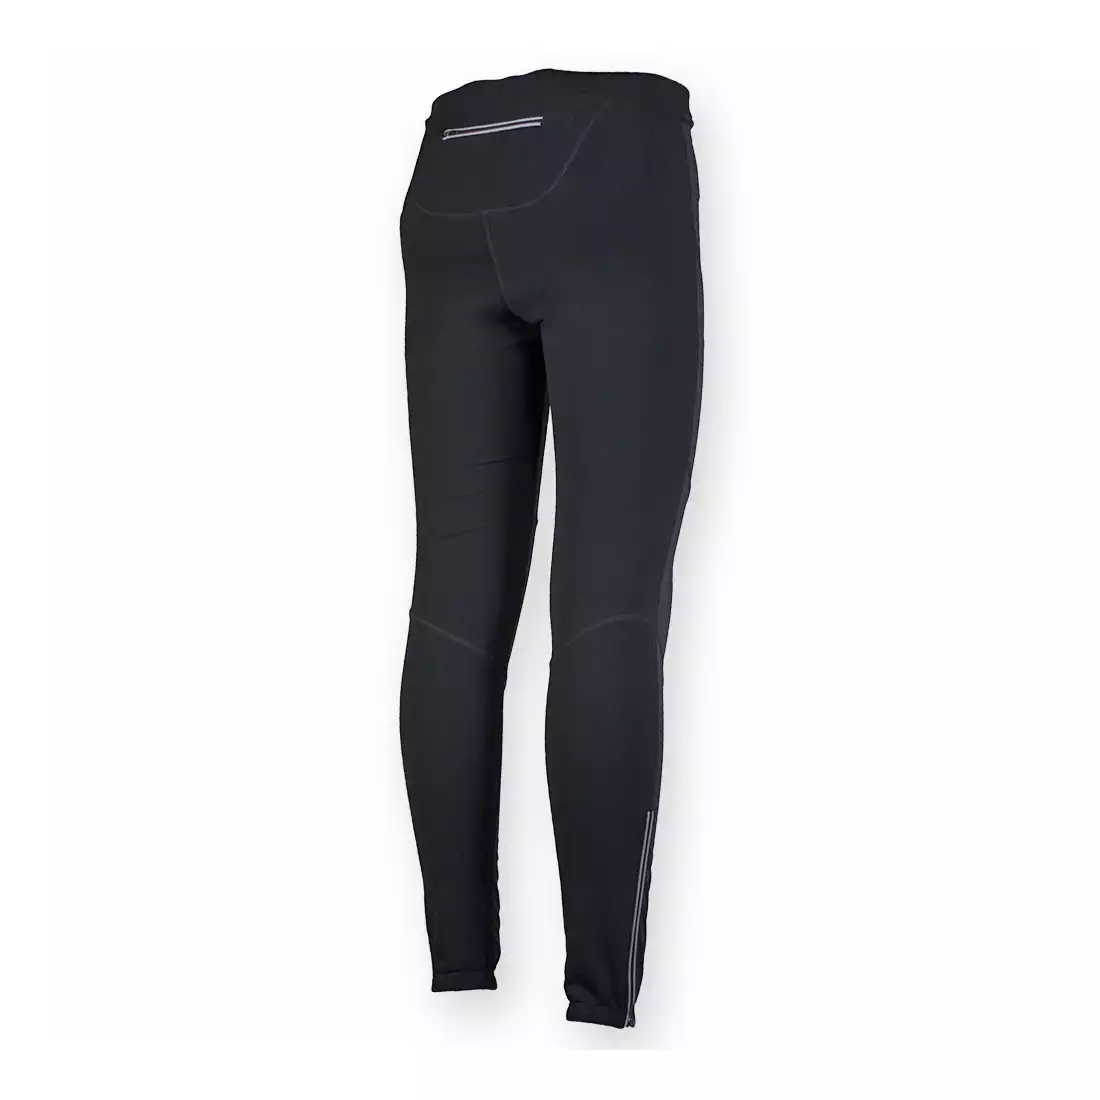 ROGELLI RUN - RIBERA - męskie ocieplane spodnie do biegania, SOFTSHELL, kolor: Czarny